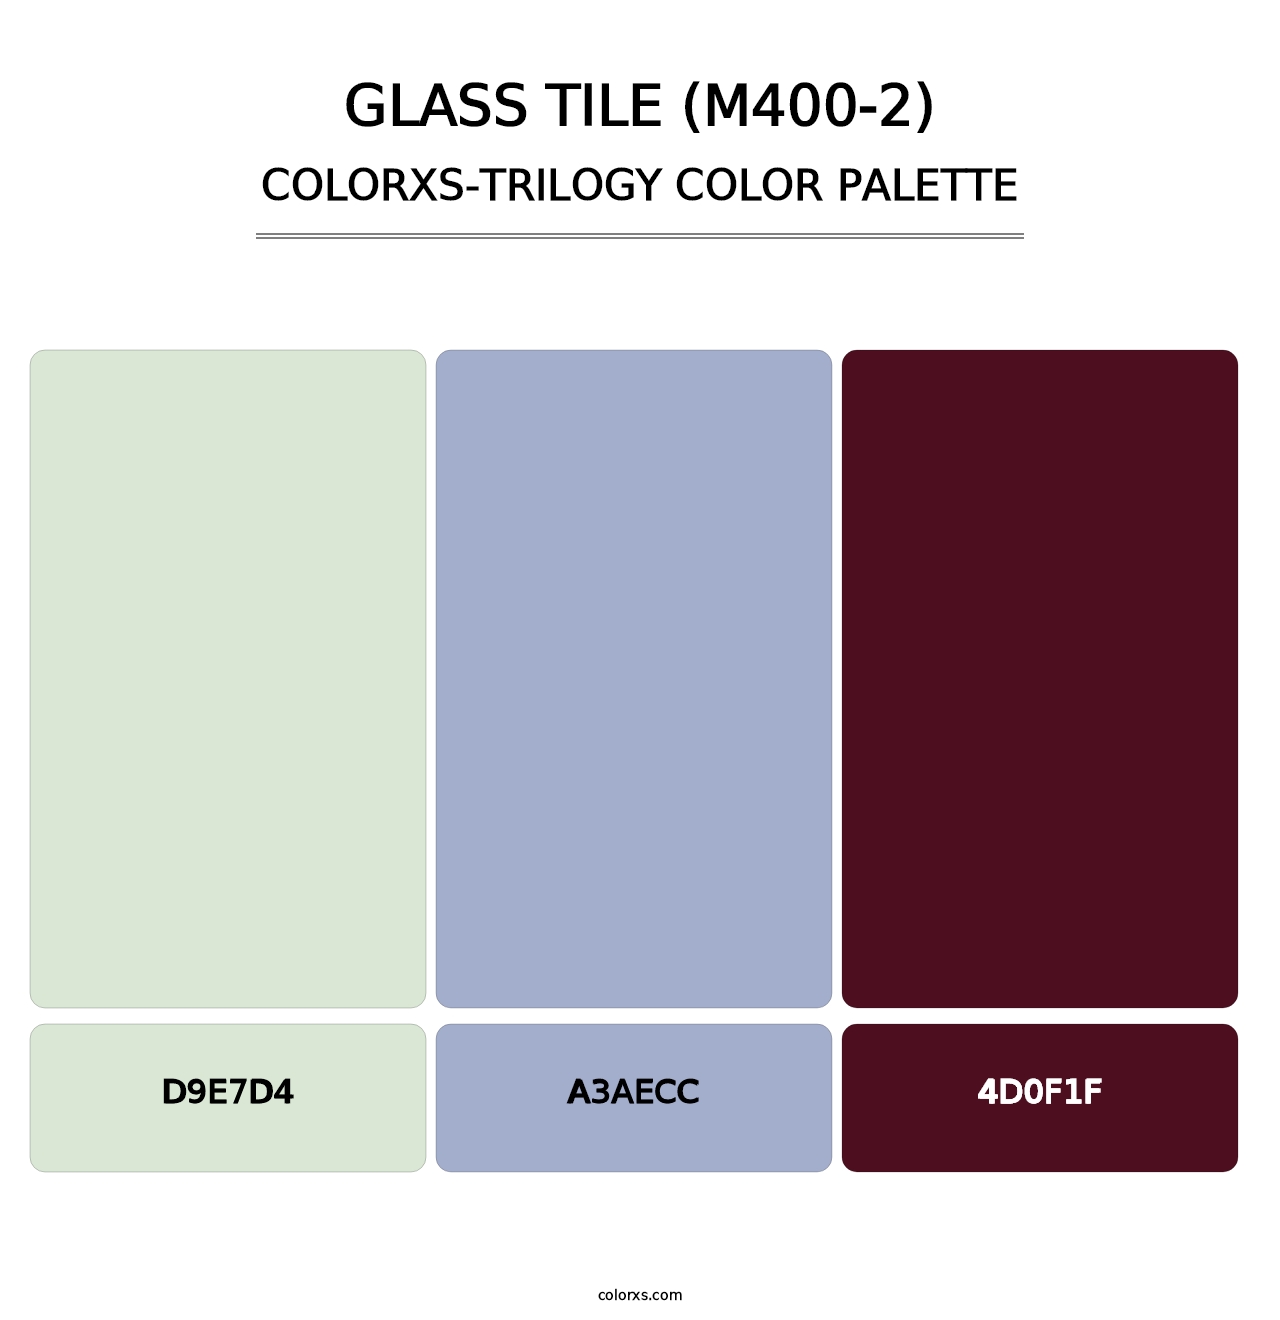 Glass Tile (M400-2) - Colorxs Trilogy Palette